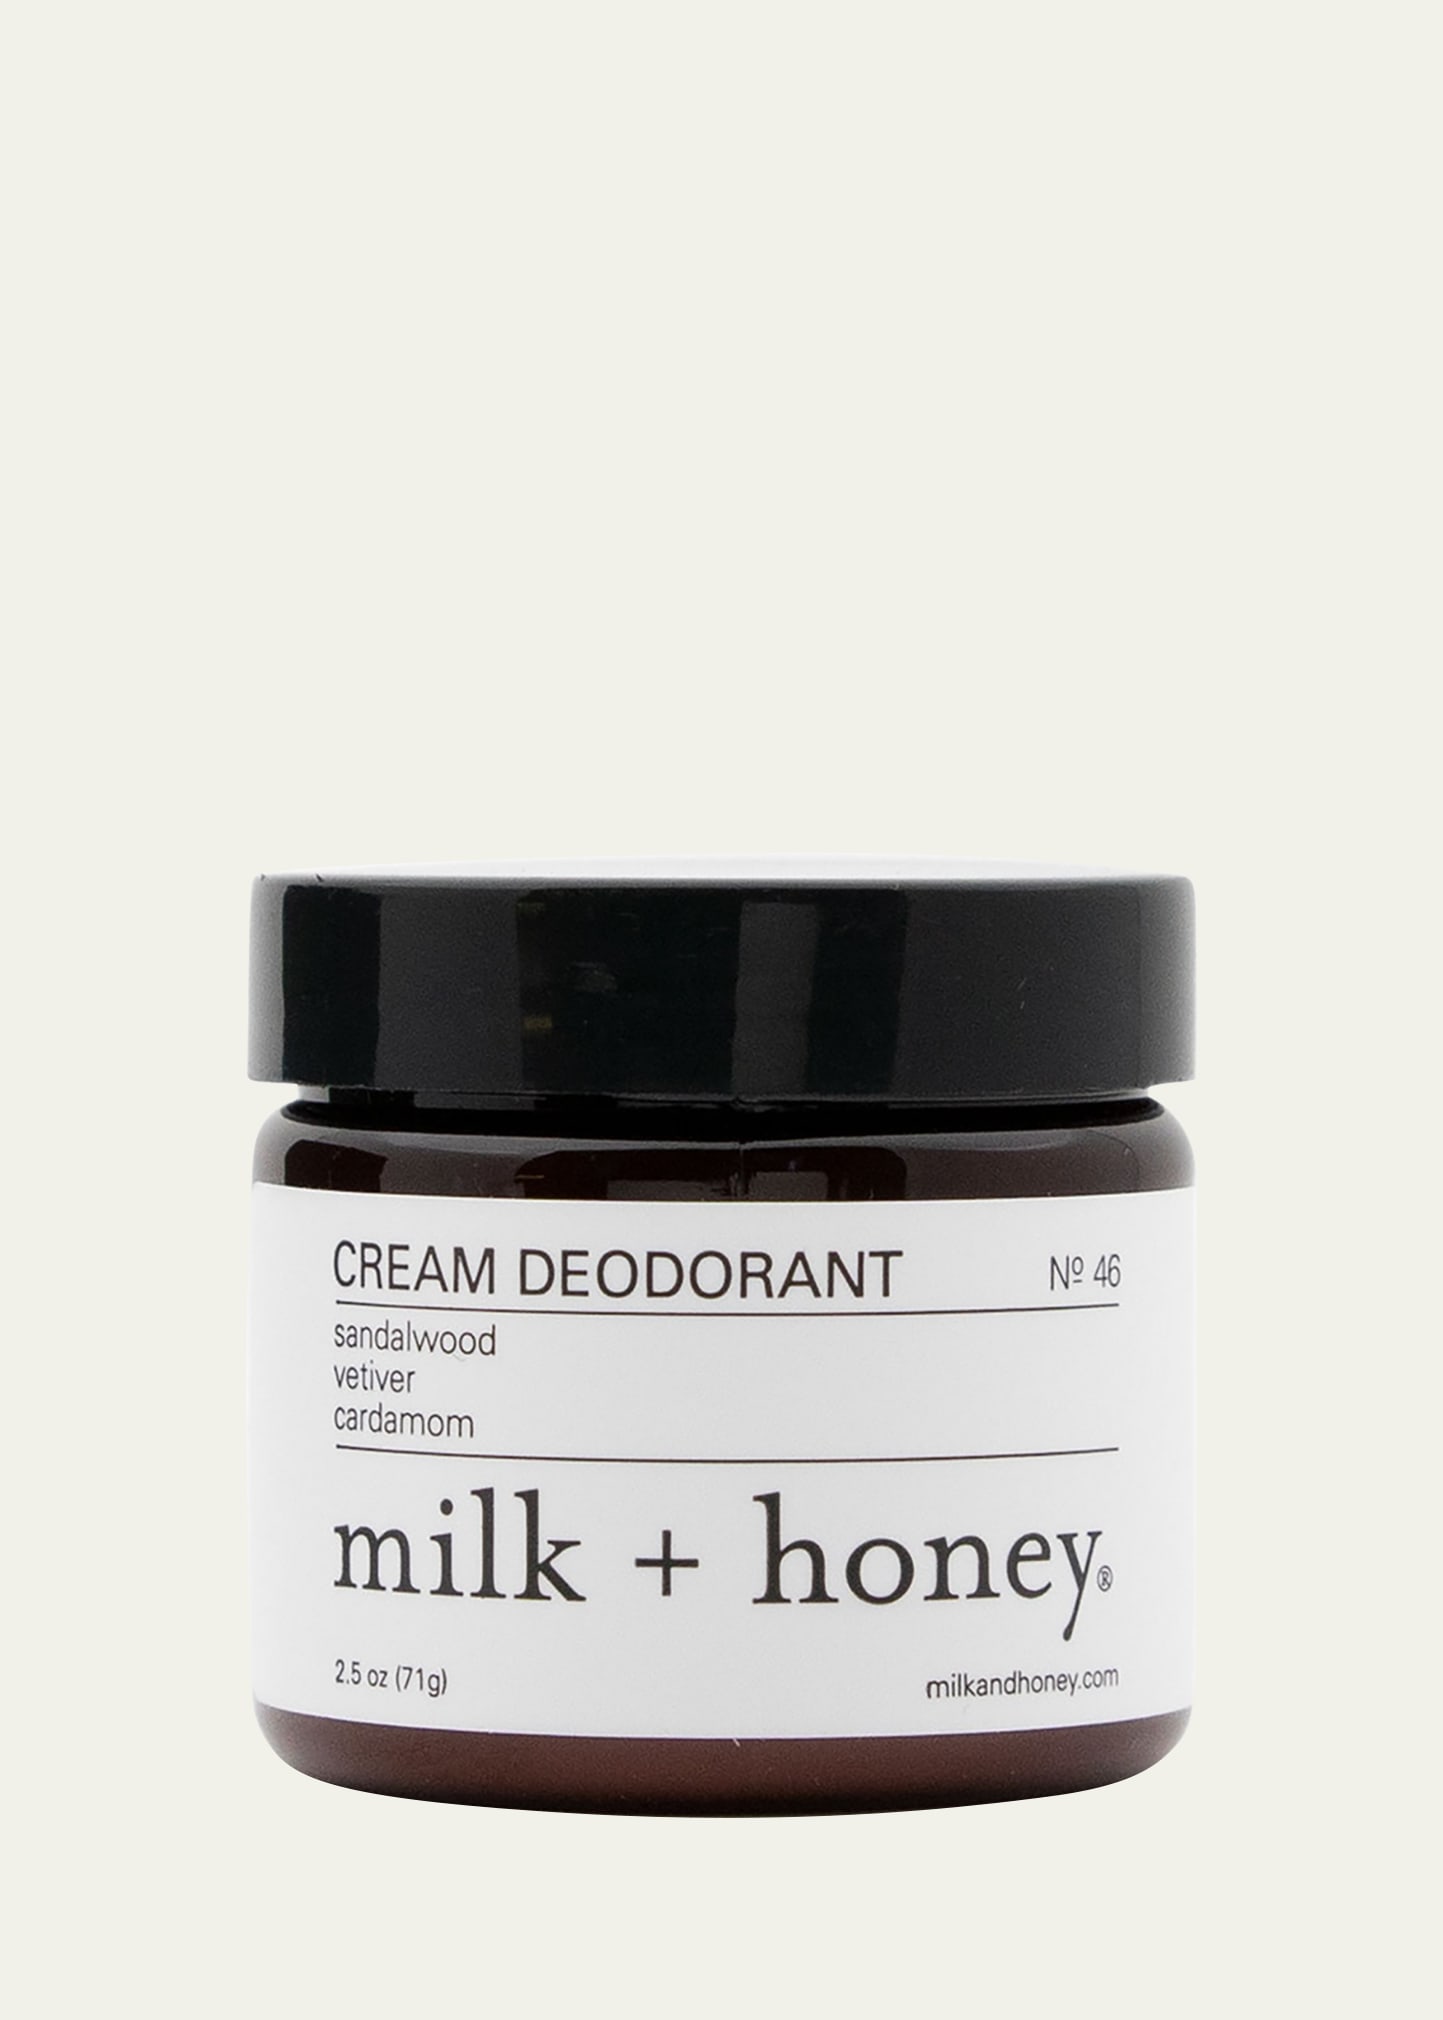 No. 46 Cream Deodorant, 2.5 oz.